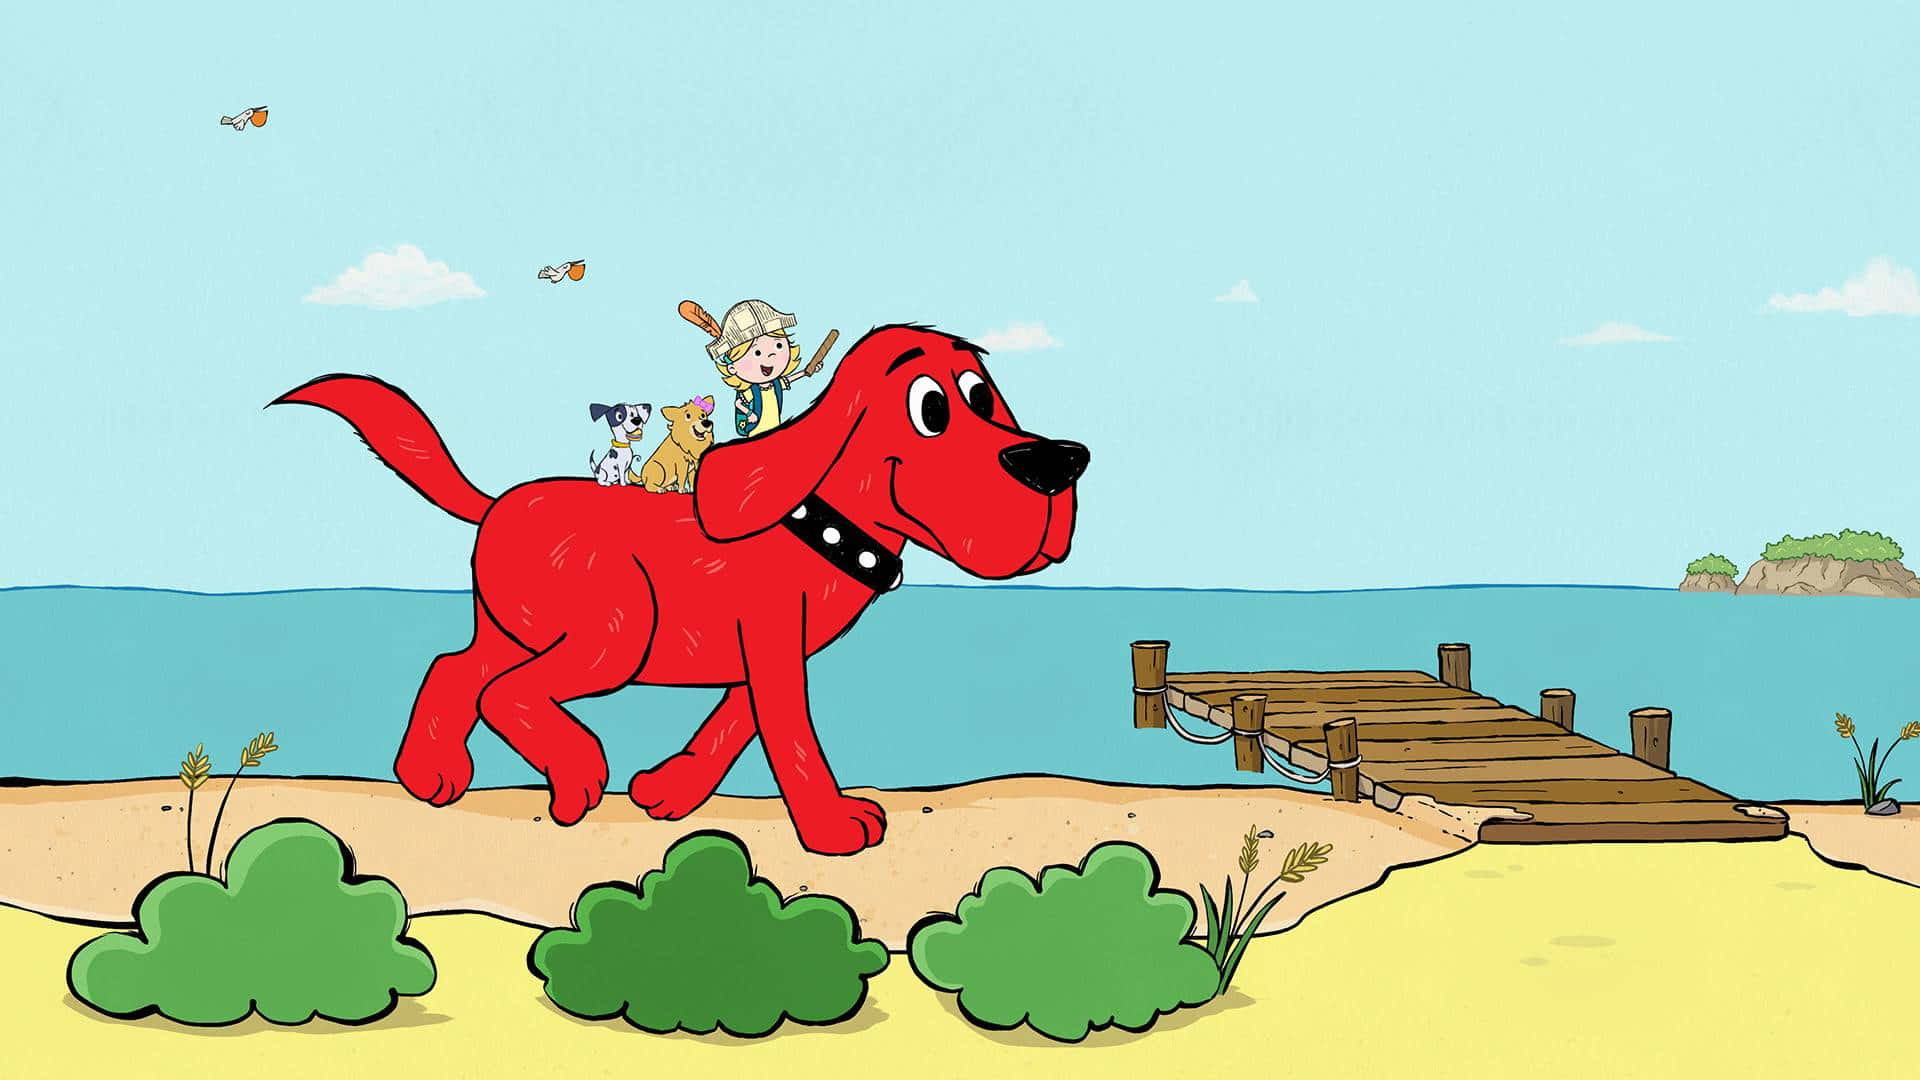 Unsergeliebter Clifford The Big Red Dog Ist Immer Da, Um Freude Und Freundschaft Zu Verbreiten!